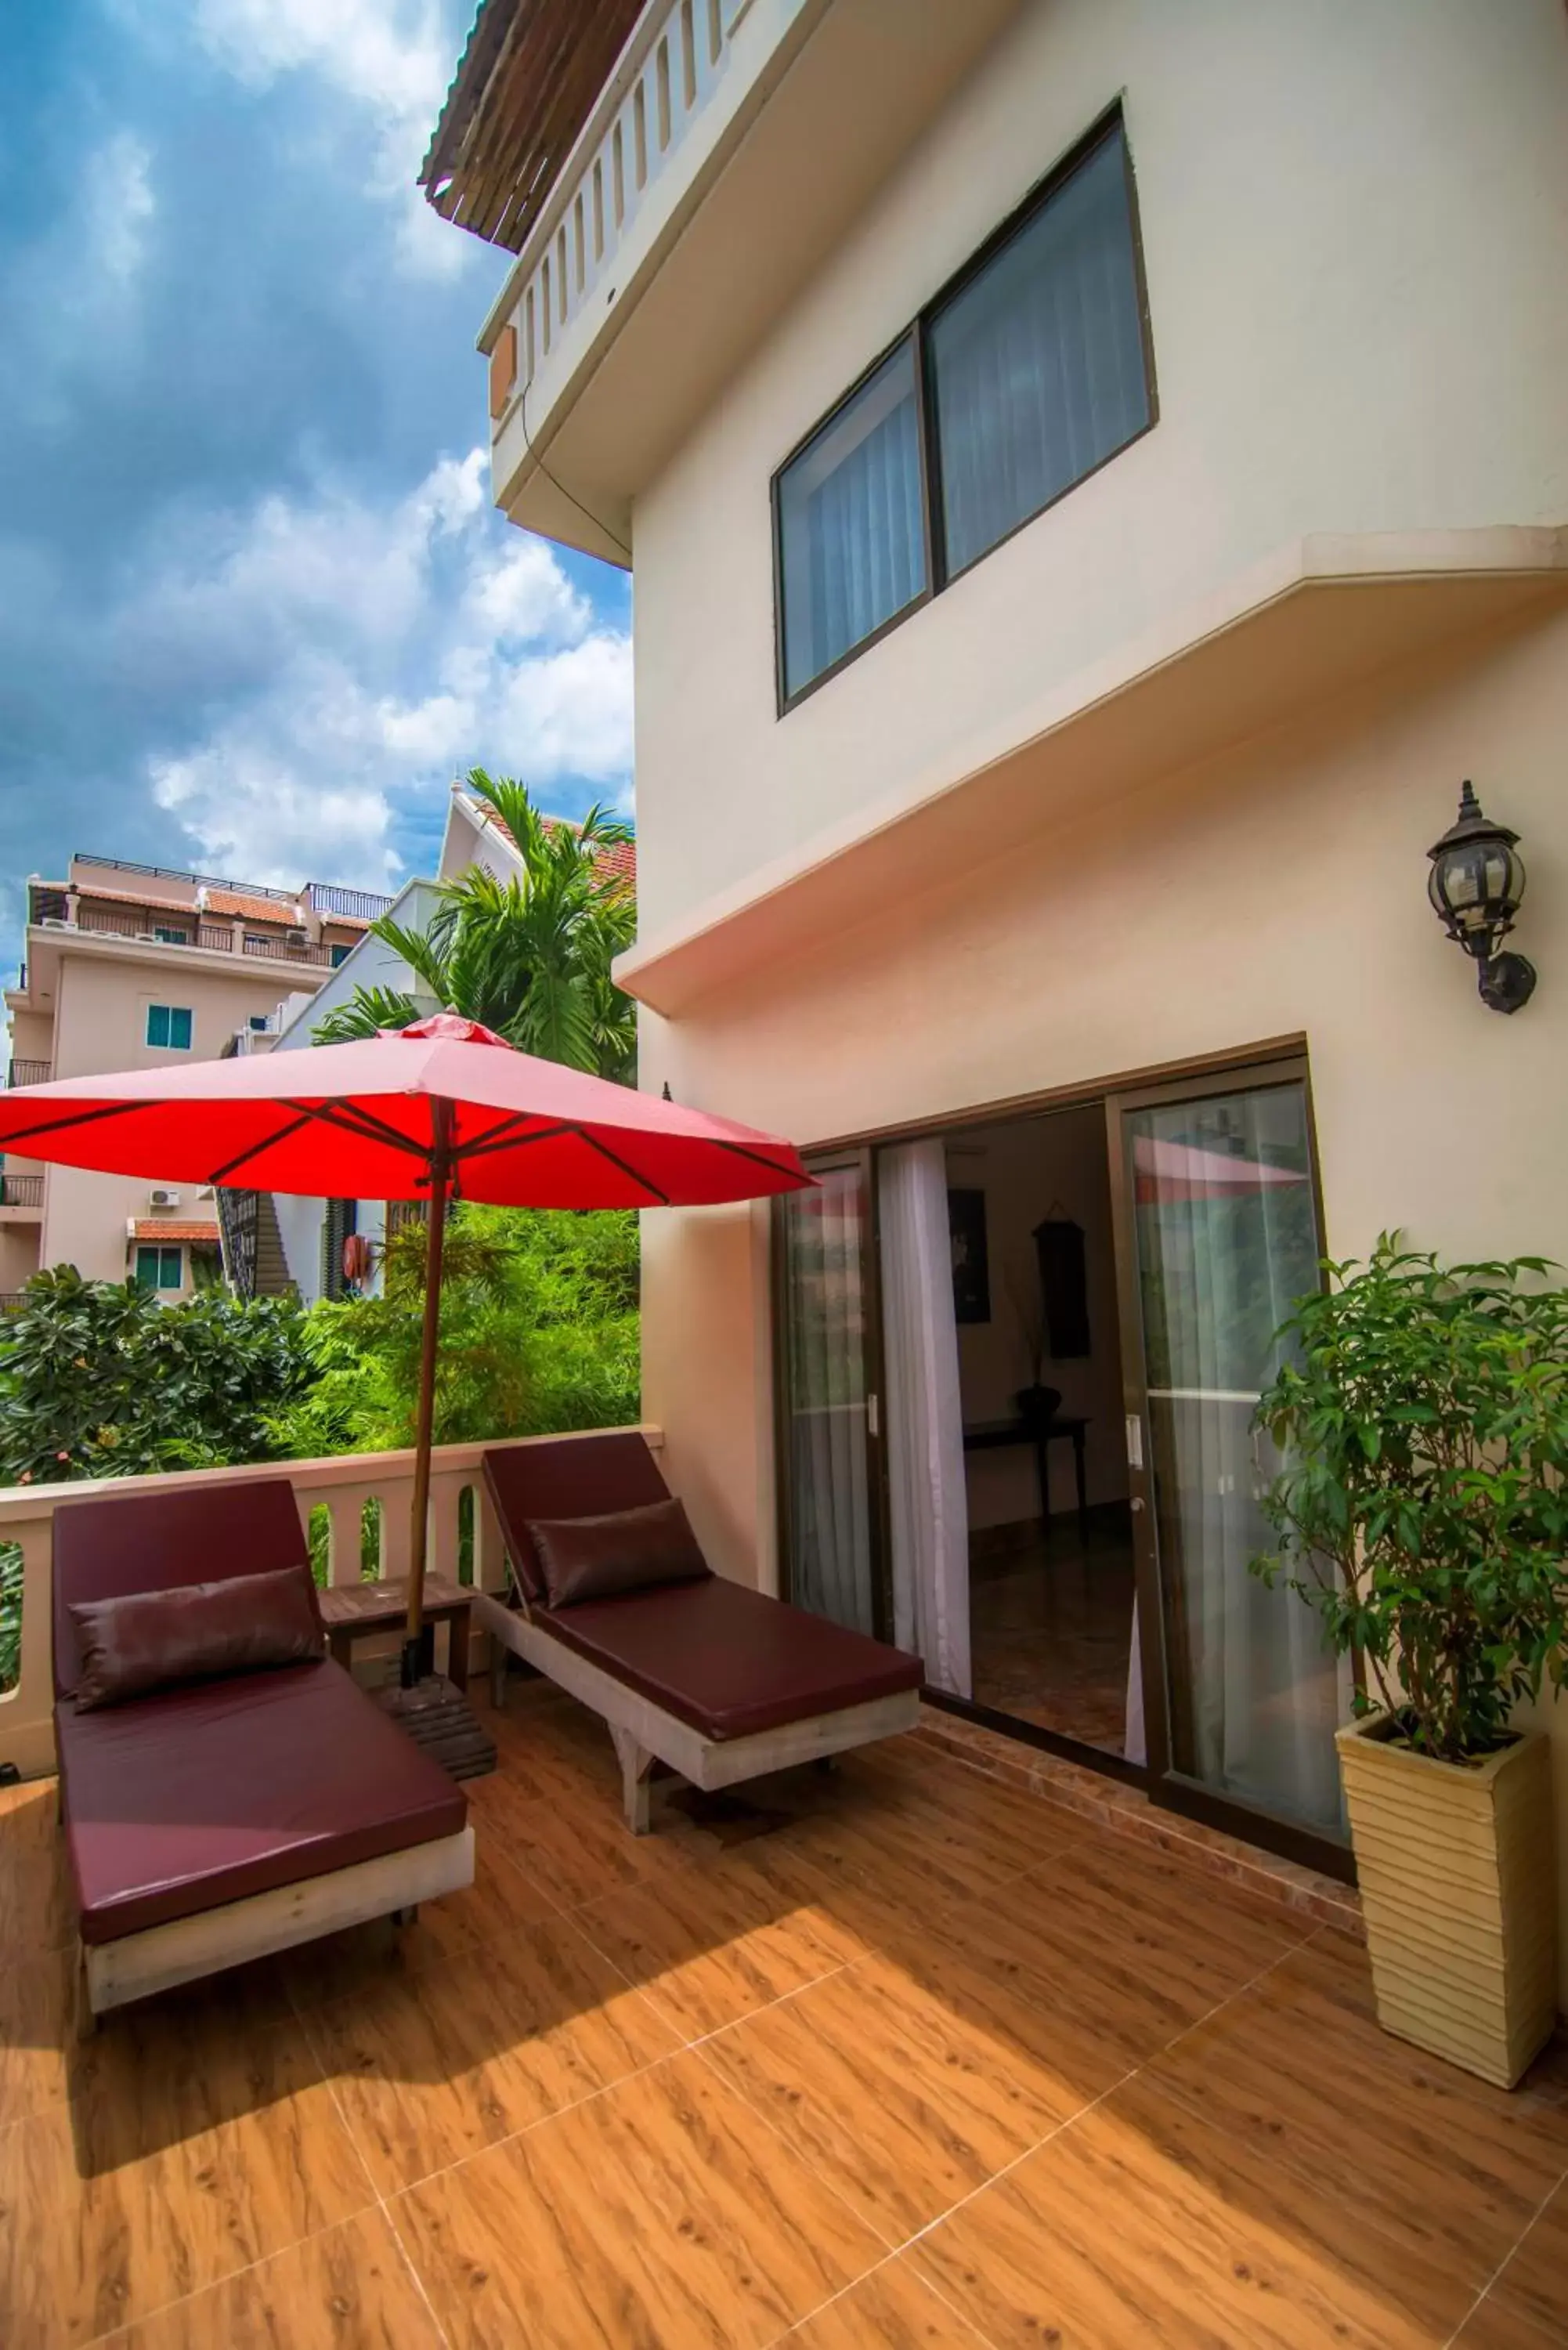 Balcony/Terrace, Patio/Outdoor Area in Reaksmey Chanreas Hotel